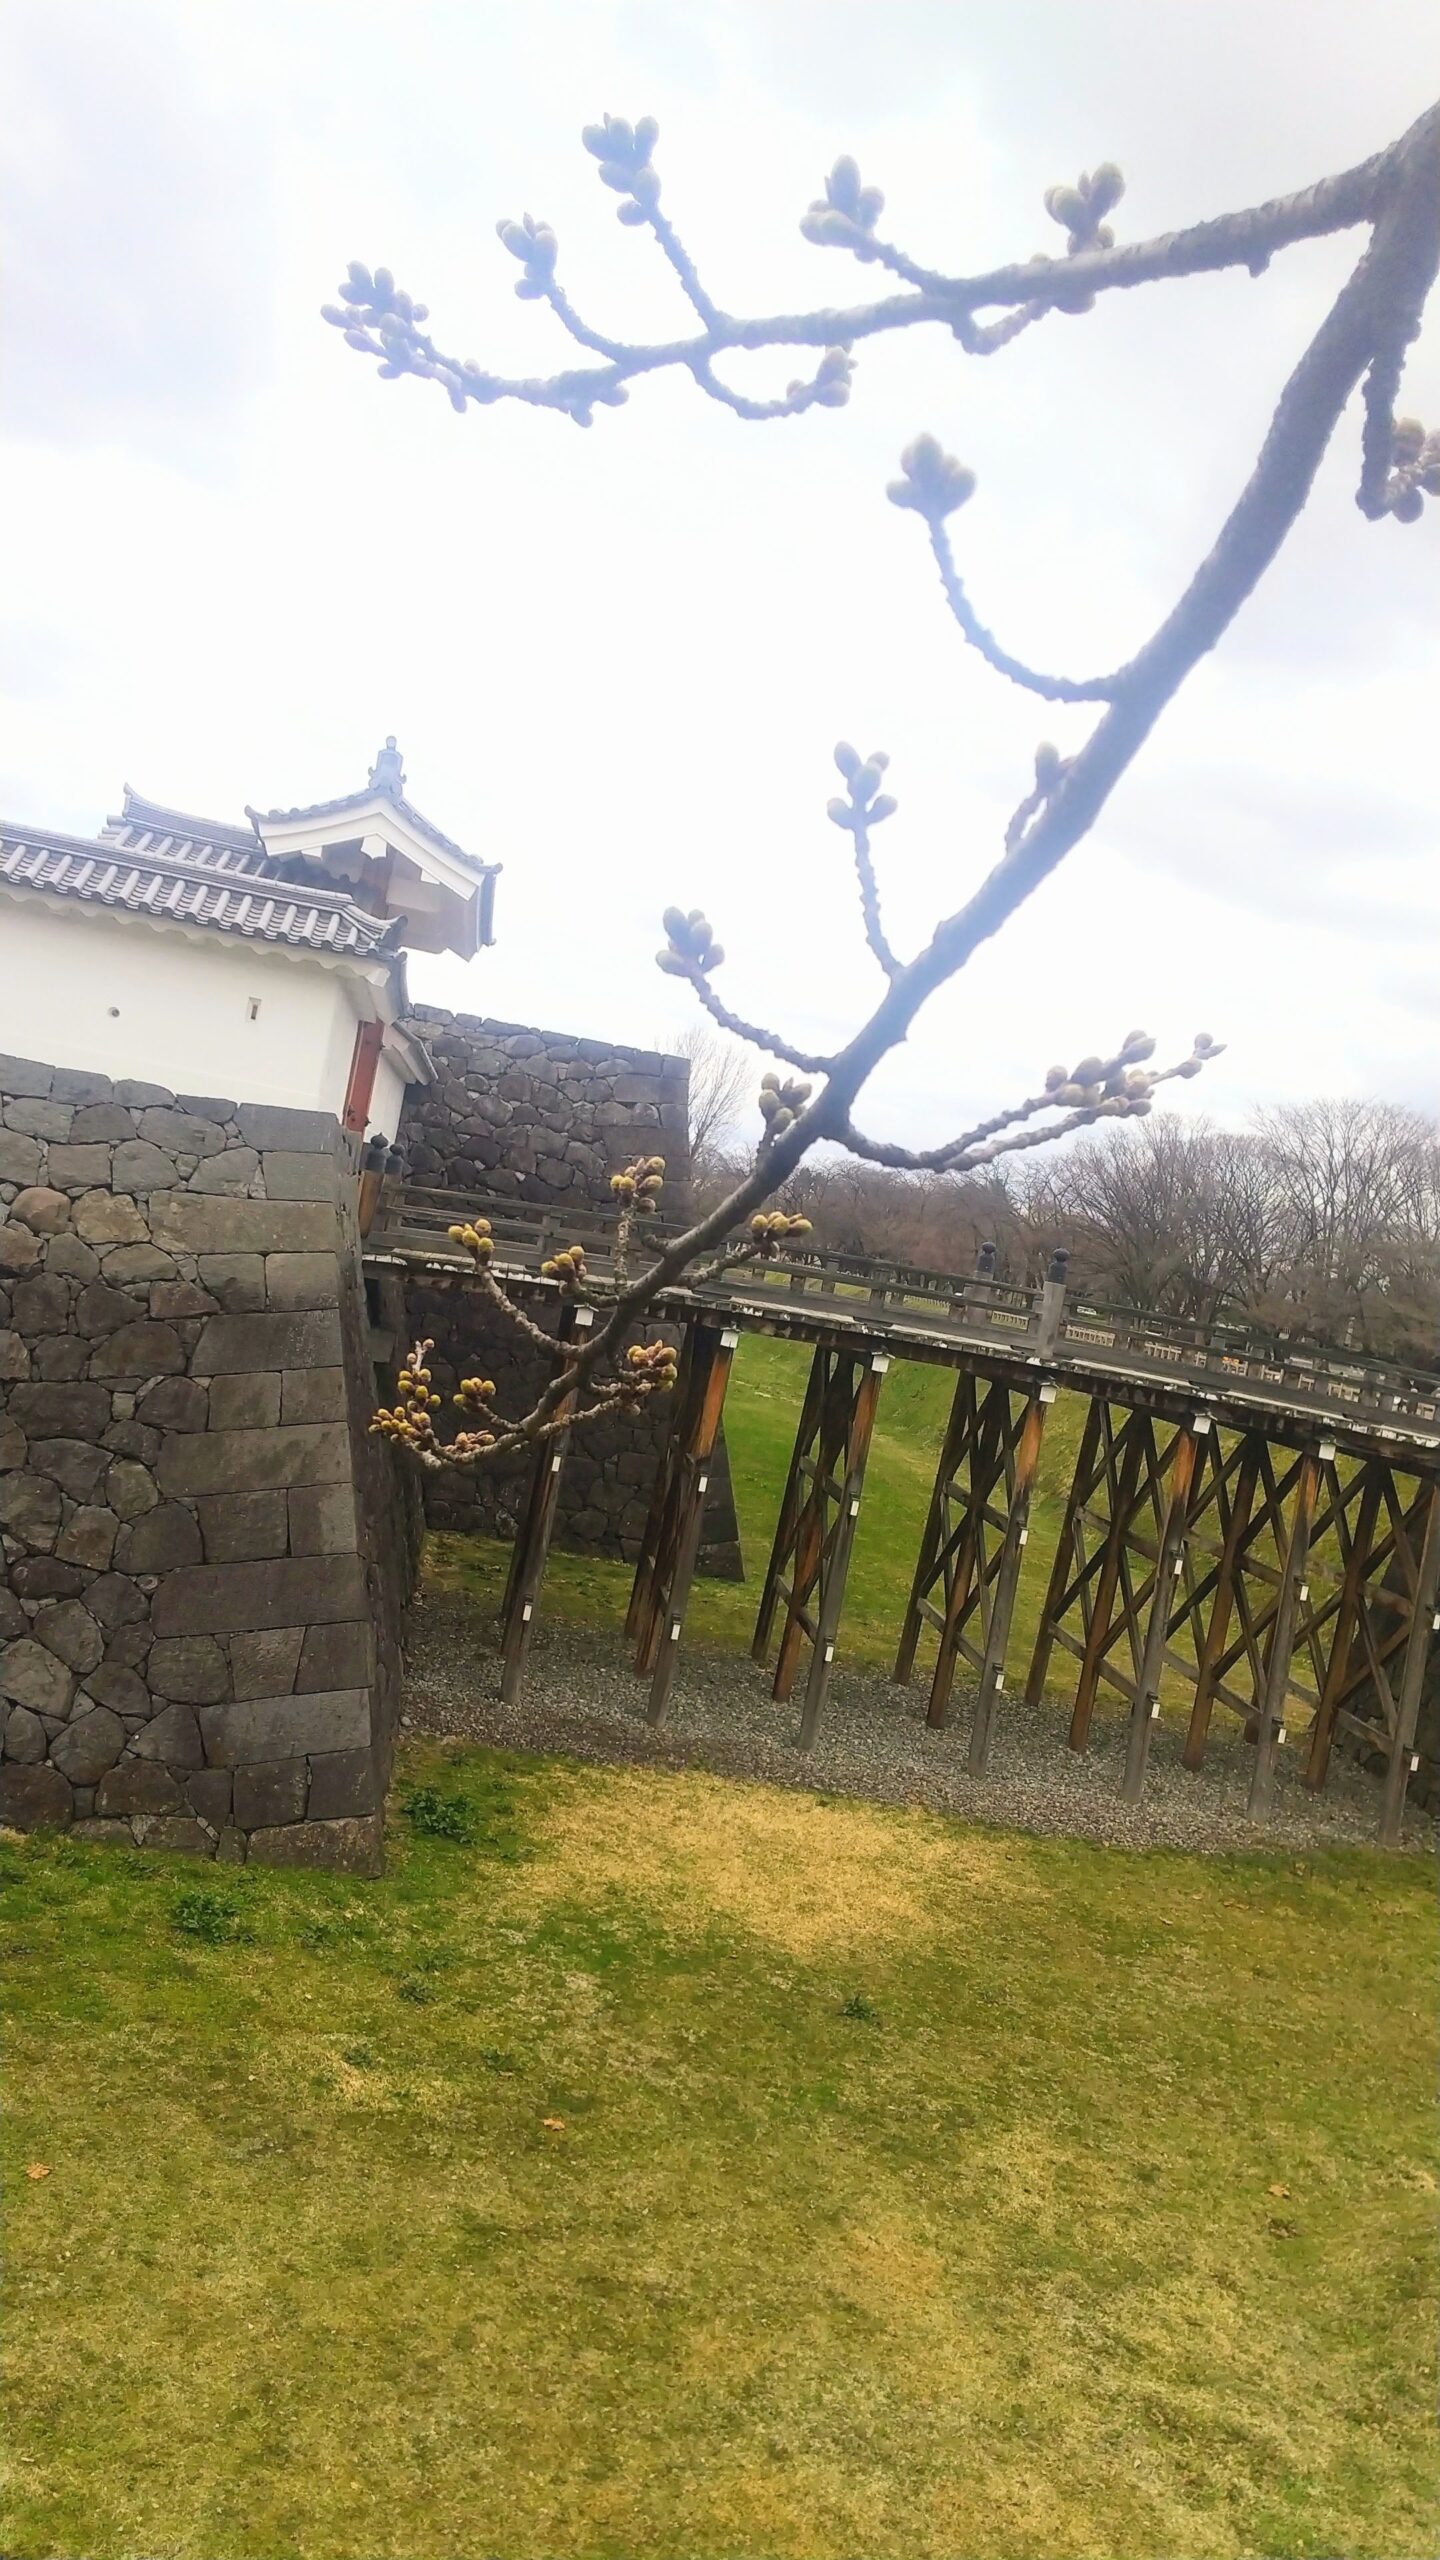 【山形城跡 桜満開 4月山形観光情報】霞城公園の出羽桜に癒される Yamagata-Tourism-Information-in-April.Enjoy-the-Cherry-Blossoms-in-Full-Bloom-at-the-Ruins-of-Yamagata-Castle.jpg